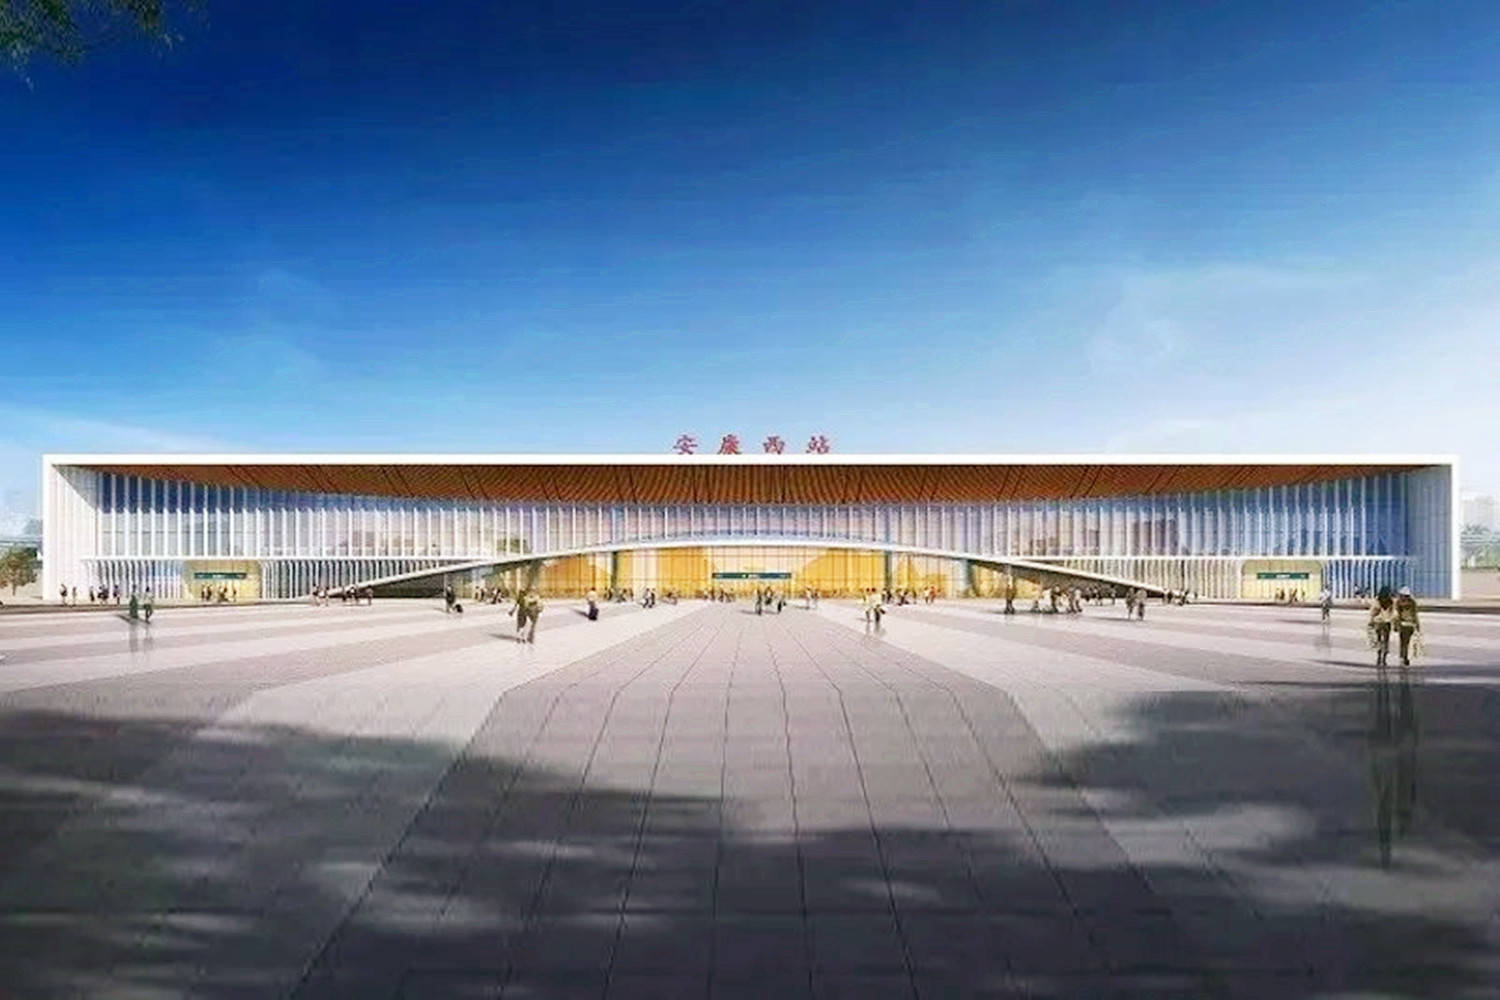 陕西规划建一座高铁站,造型上融入蚕茧元素,站台规模4台10线